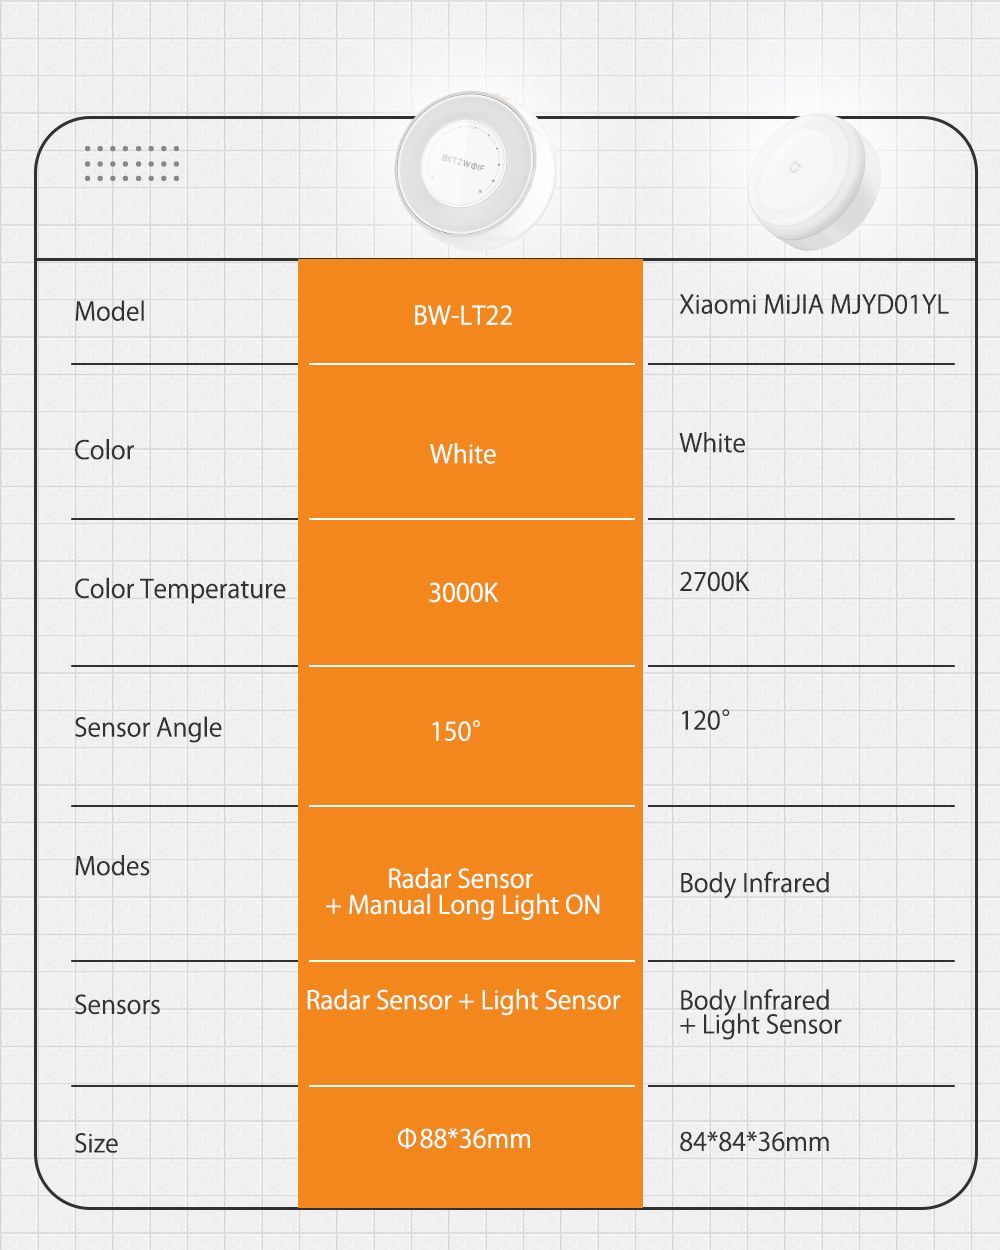 BlitzWolfreg-BW-LT22-Radar-Sensor-LED-Night-Light-Dry-Battery-Touch-Dimming-Handling-For-Home-1599853